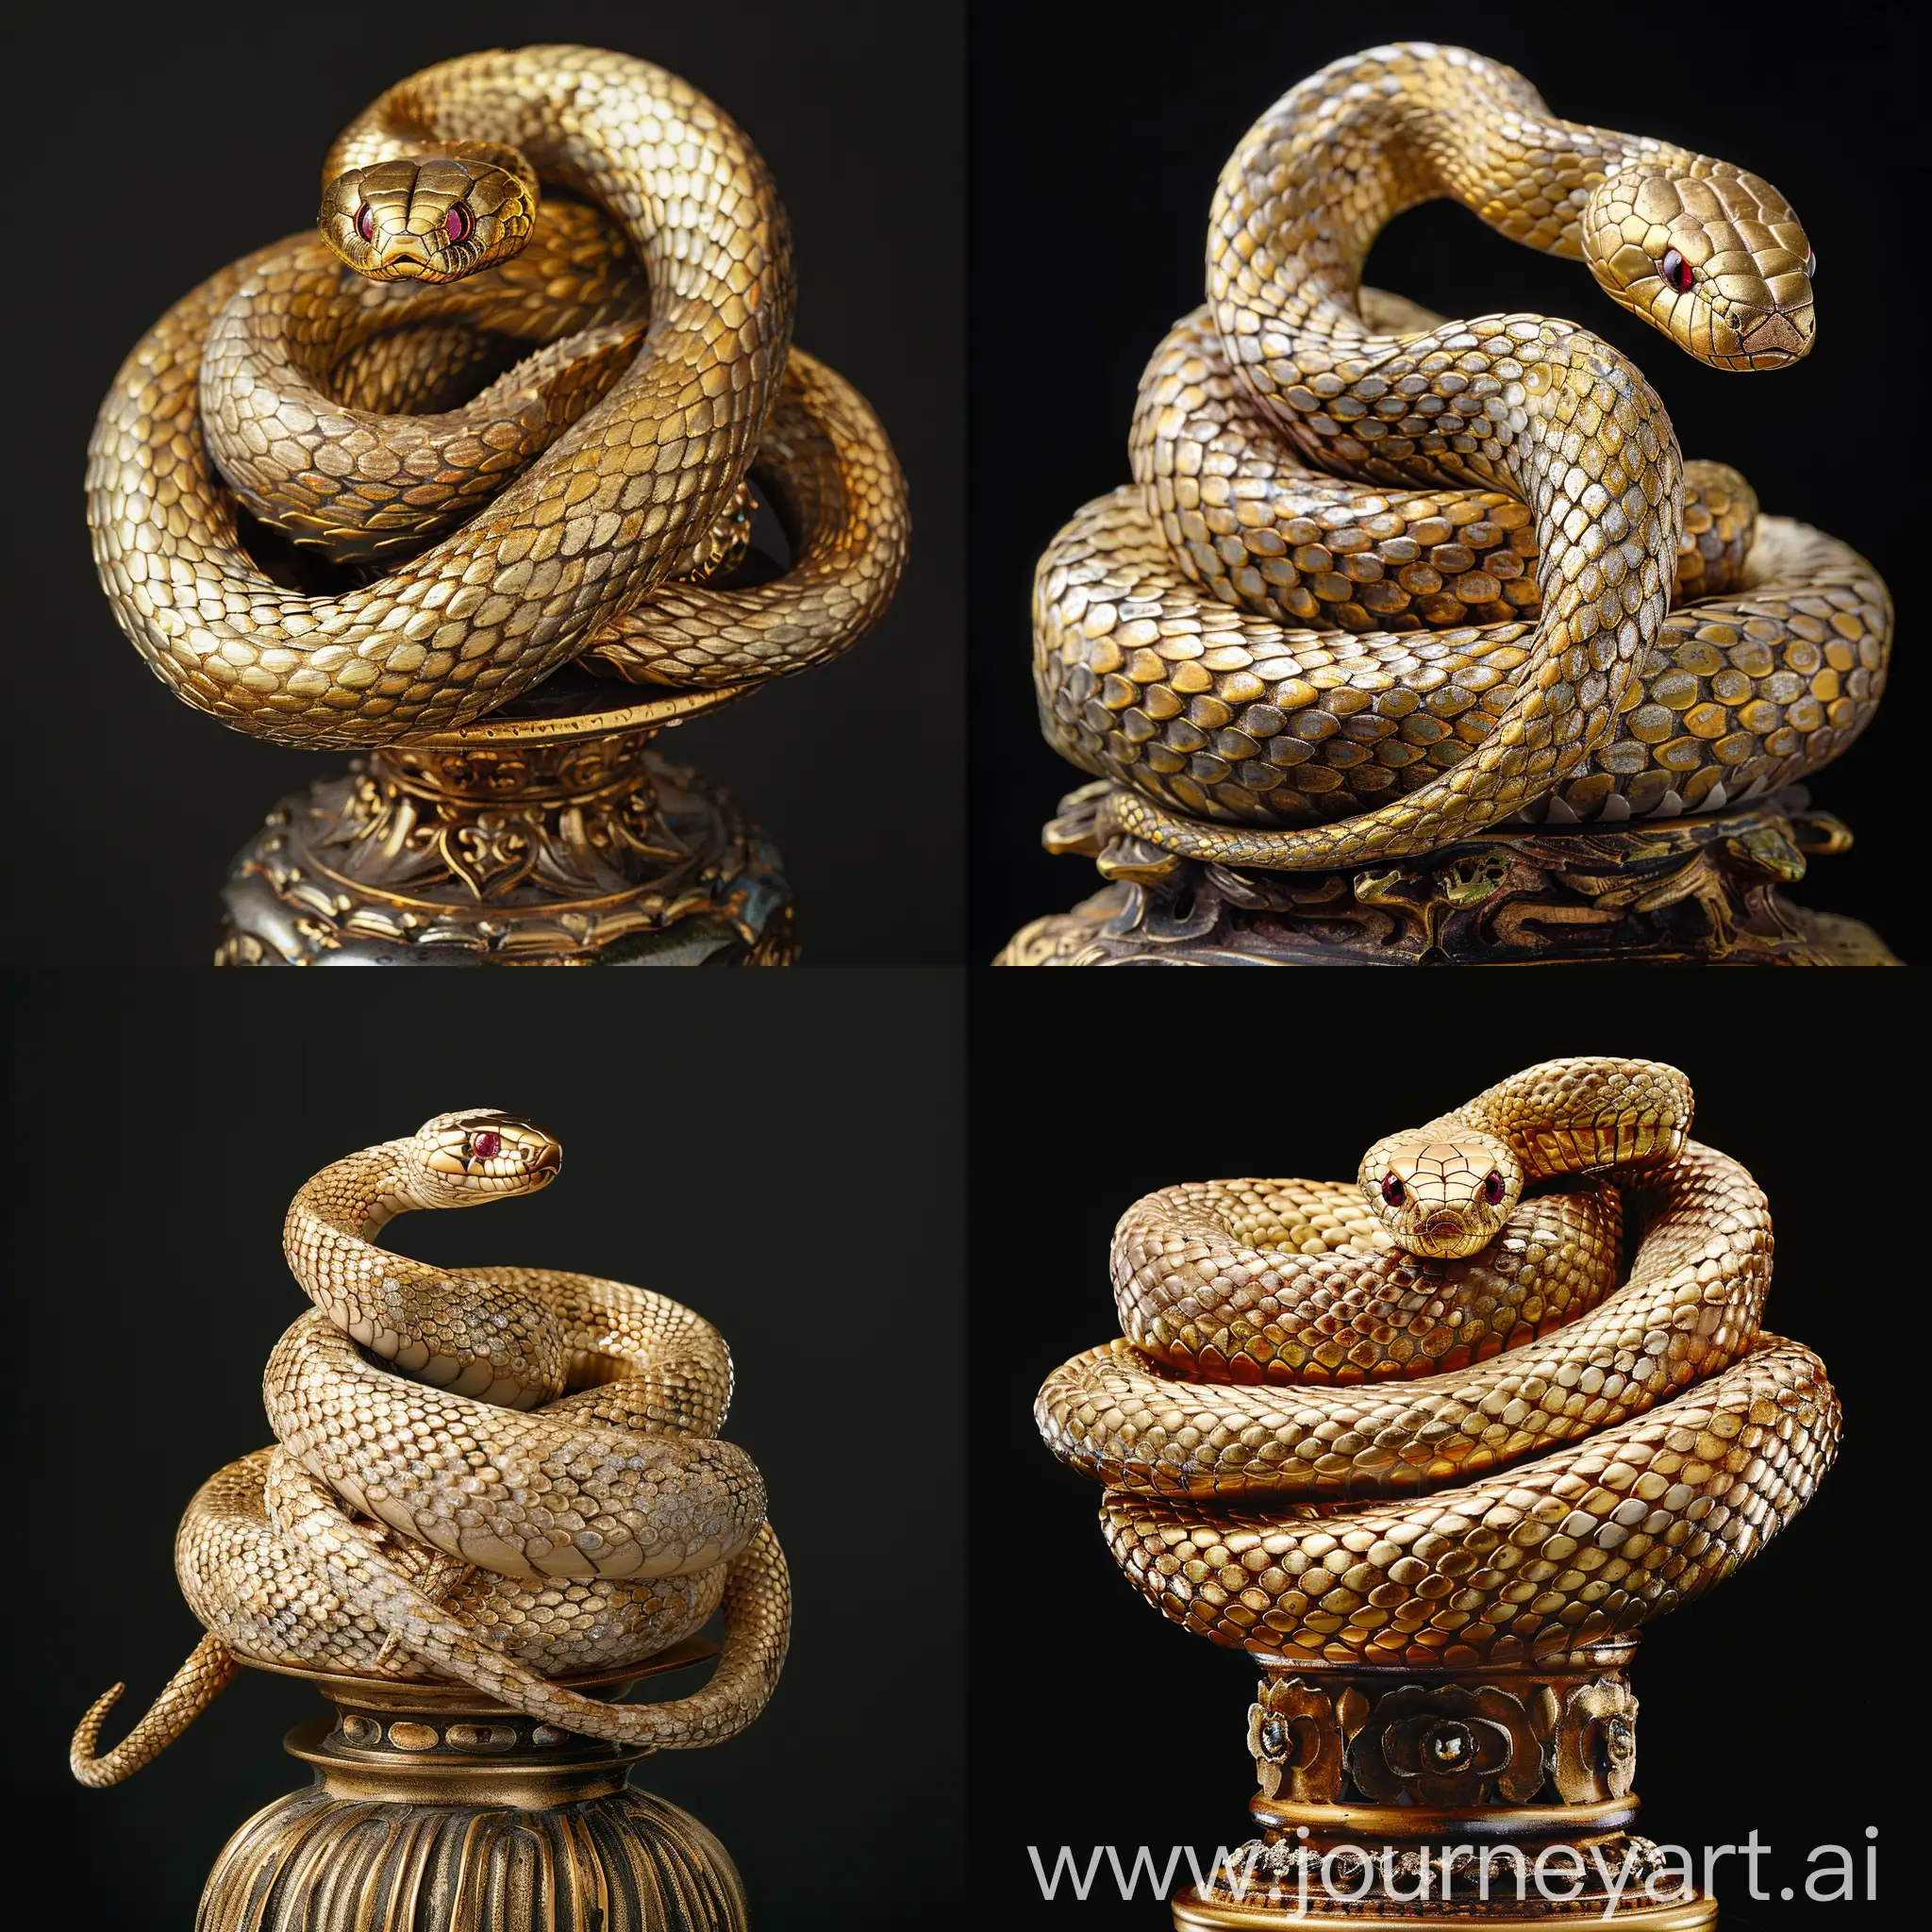 змея в китайском стиле, золото, платина, эмаль, в глазах рубины,
лежит клубком на постаменте в китайском стиле, резко везде
